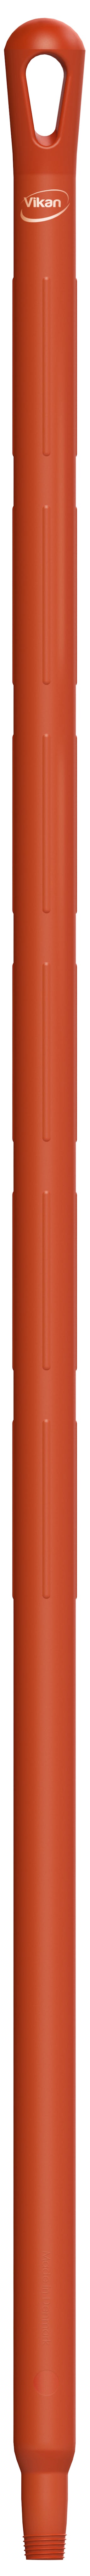 Vikan 29604 rood ultra hygiene kunststof steel 130cm